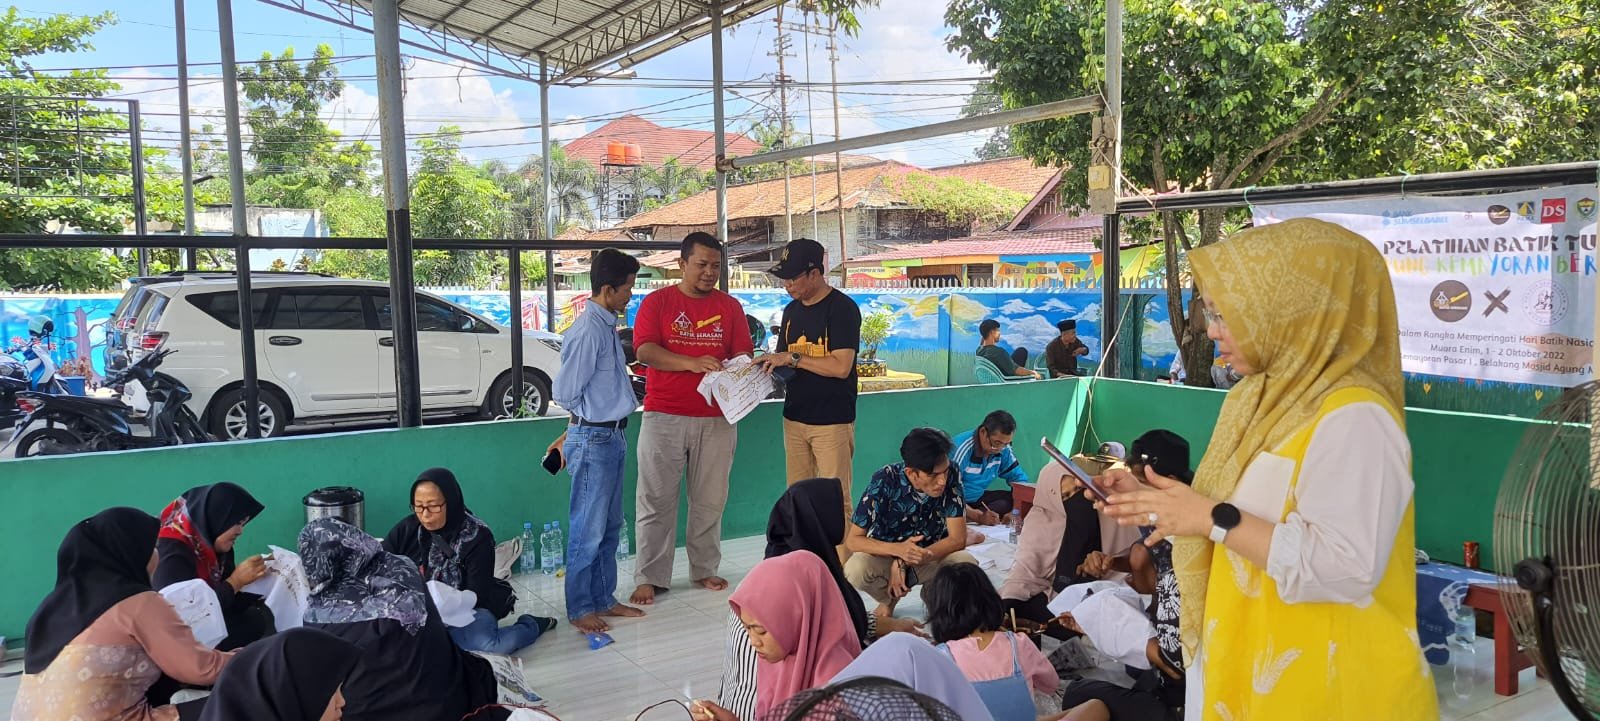 Keseruan pelatihan batik tulis yang juga di hadiri langsung oleh Plt Camat Muara Enim Husni Thamrin